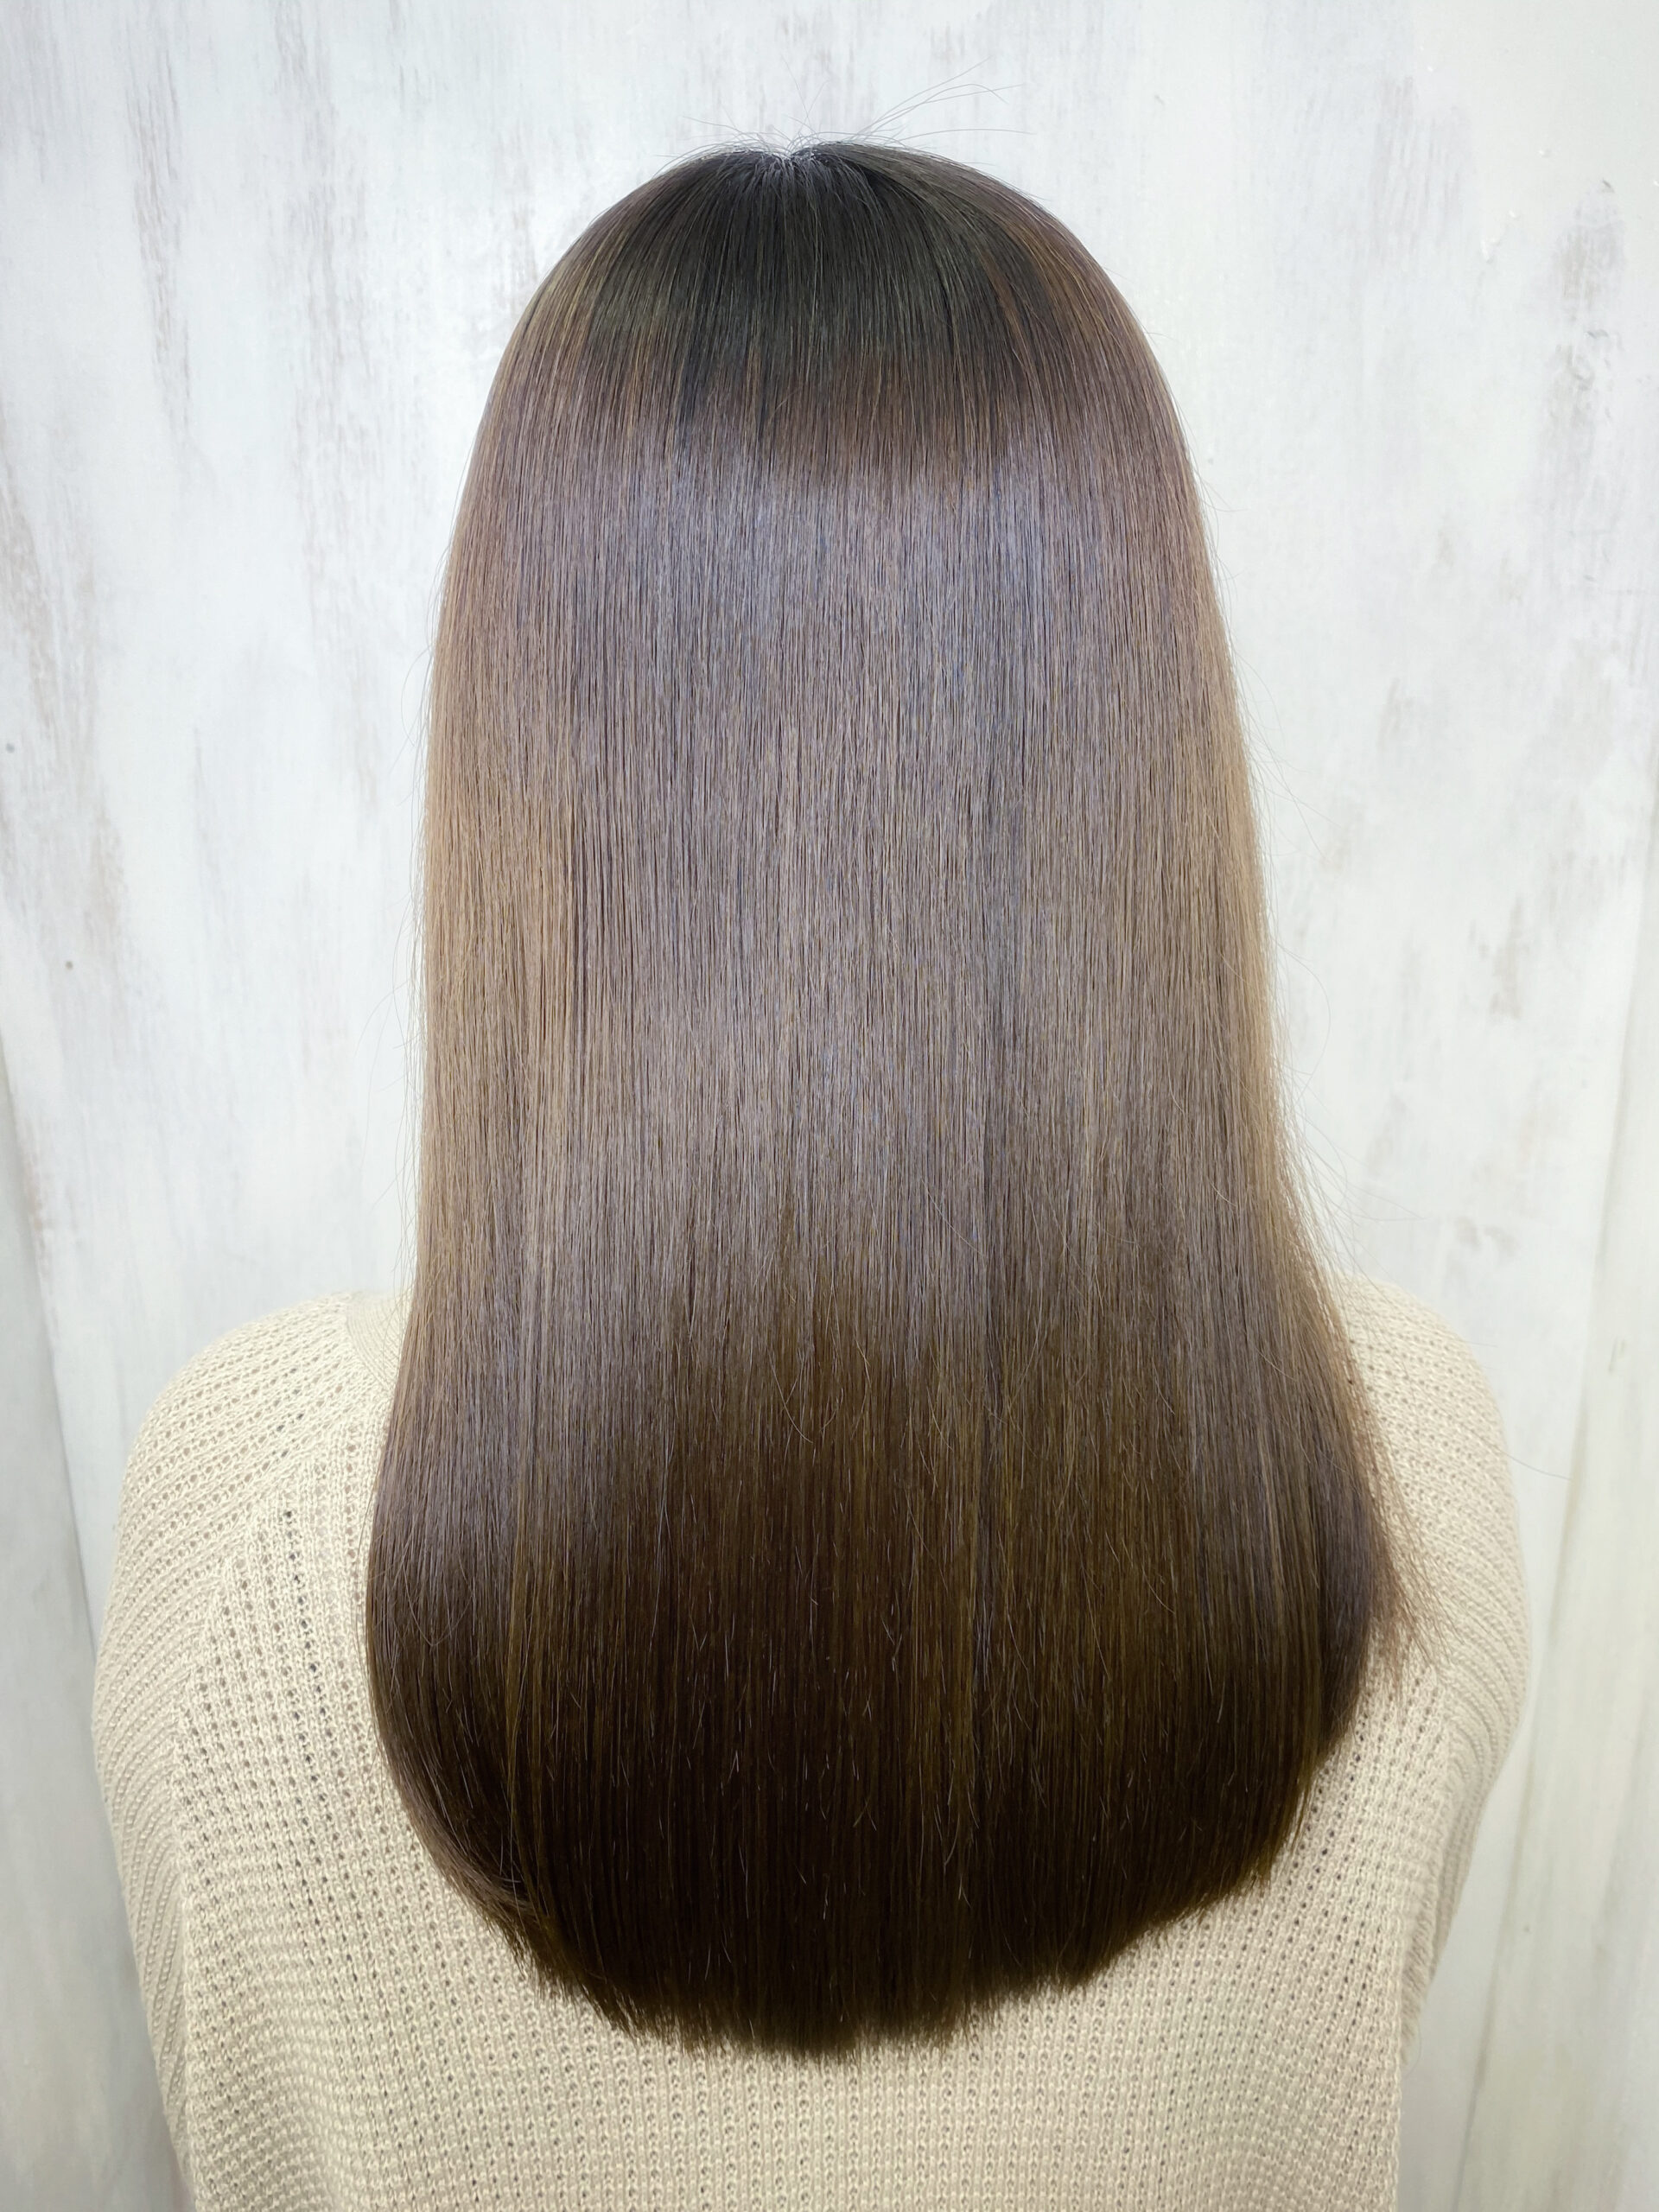 ジュエリーシステム×LULUトリートメント×縮毛矯正でパサつきが気になる方を艶髪ストレートヘア。